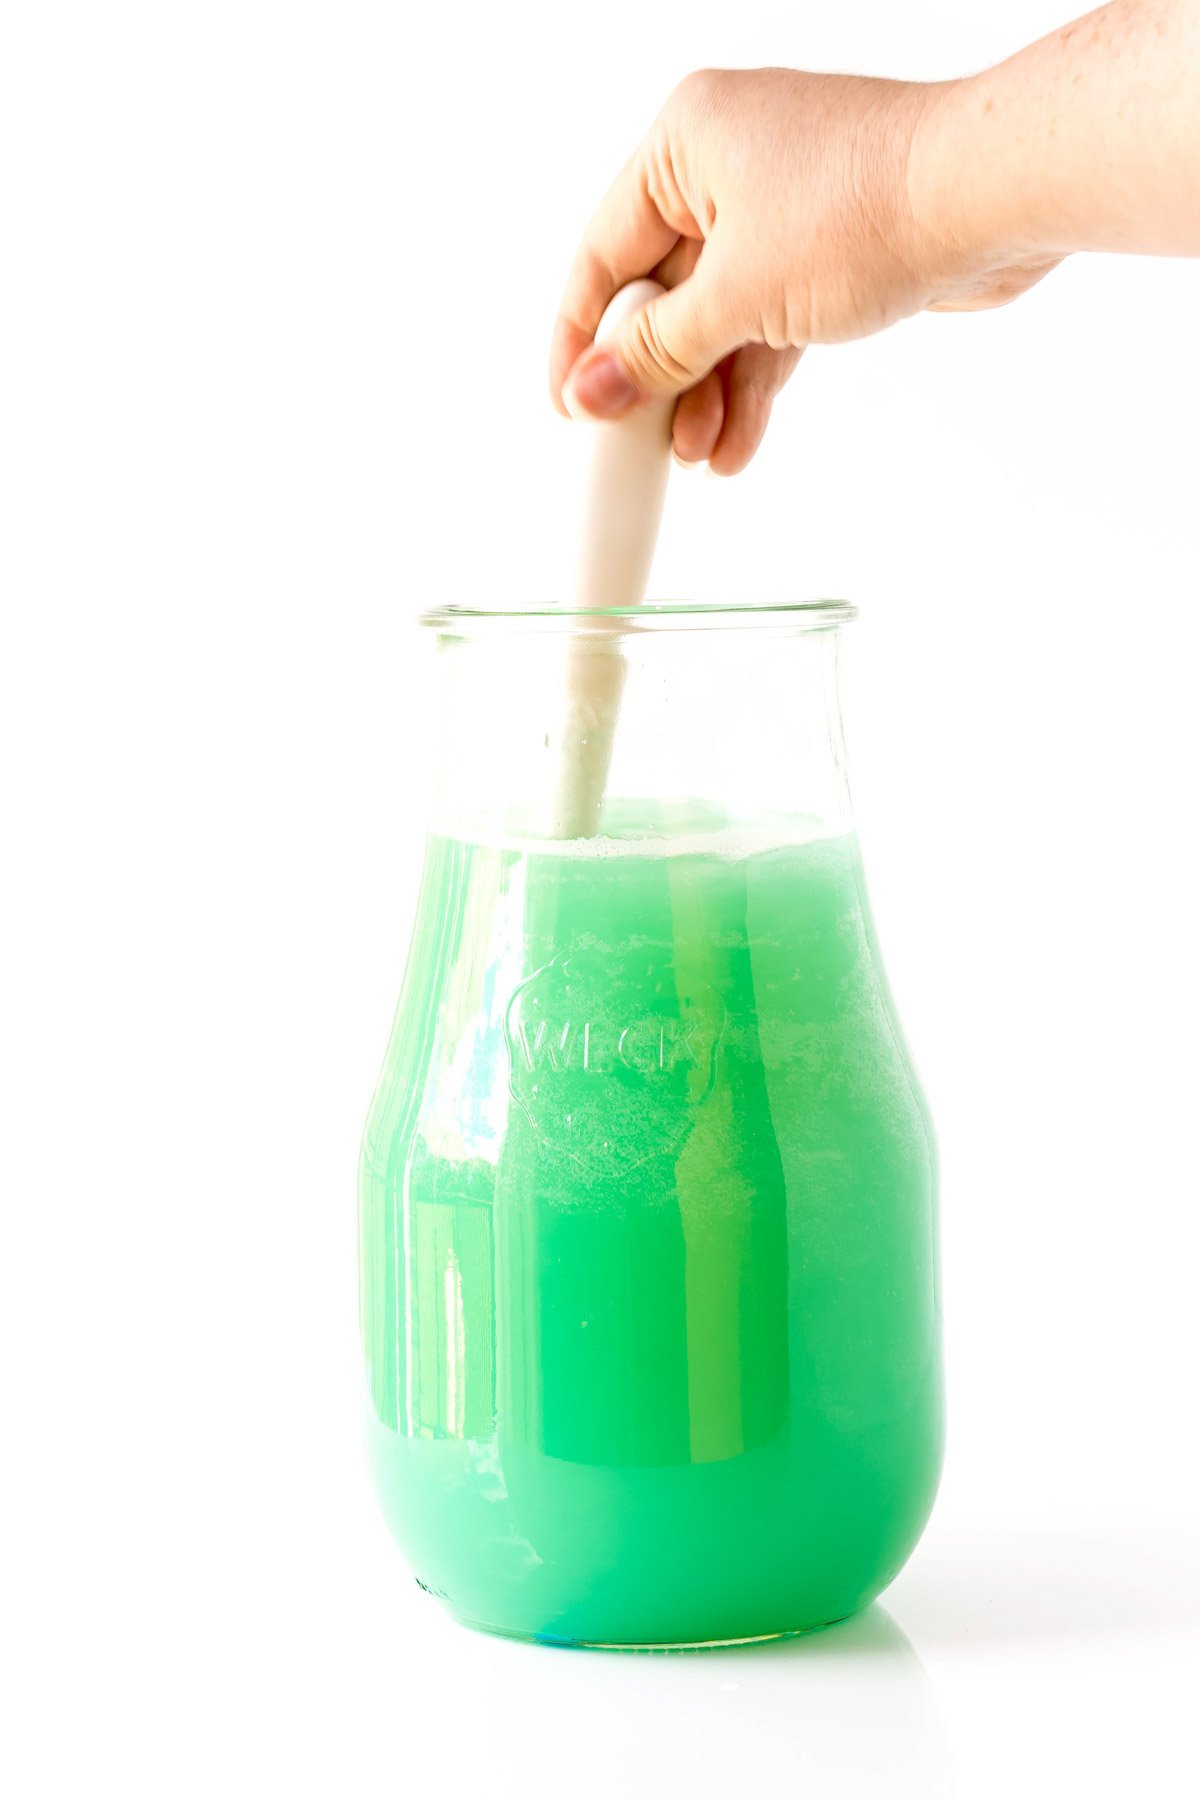 stirring mermaid punch in a glass jar